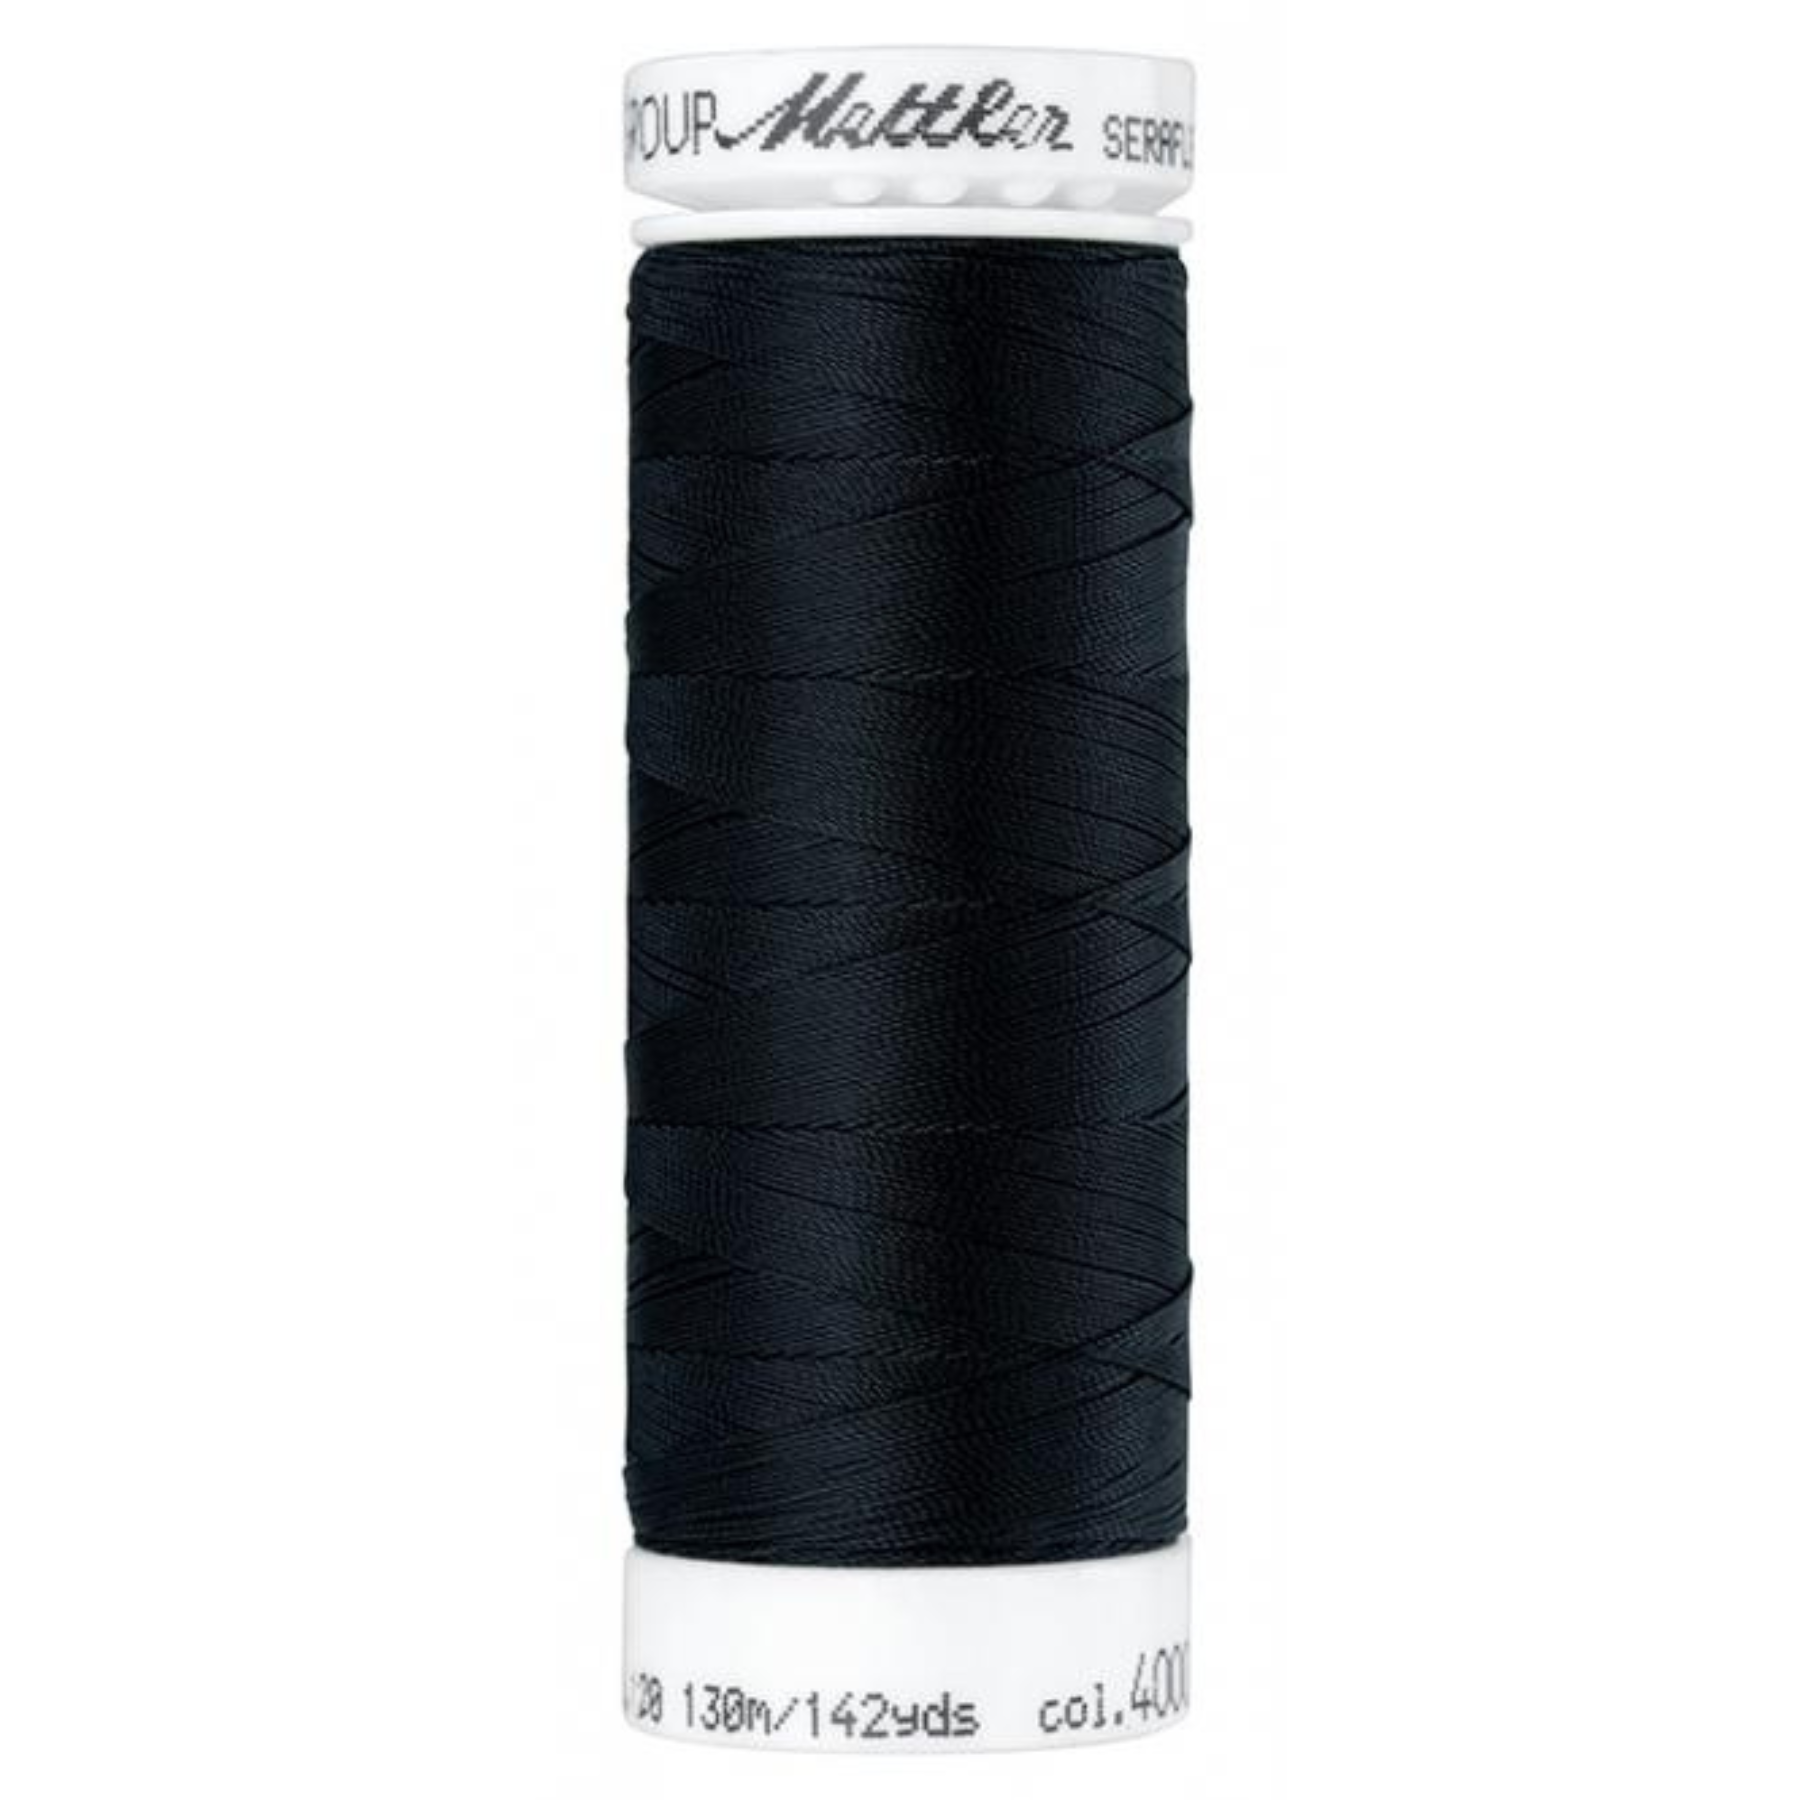 Seraflex sewing thread black